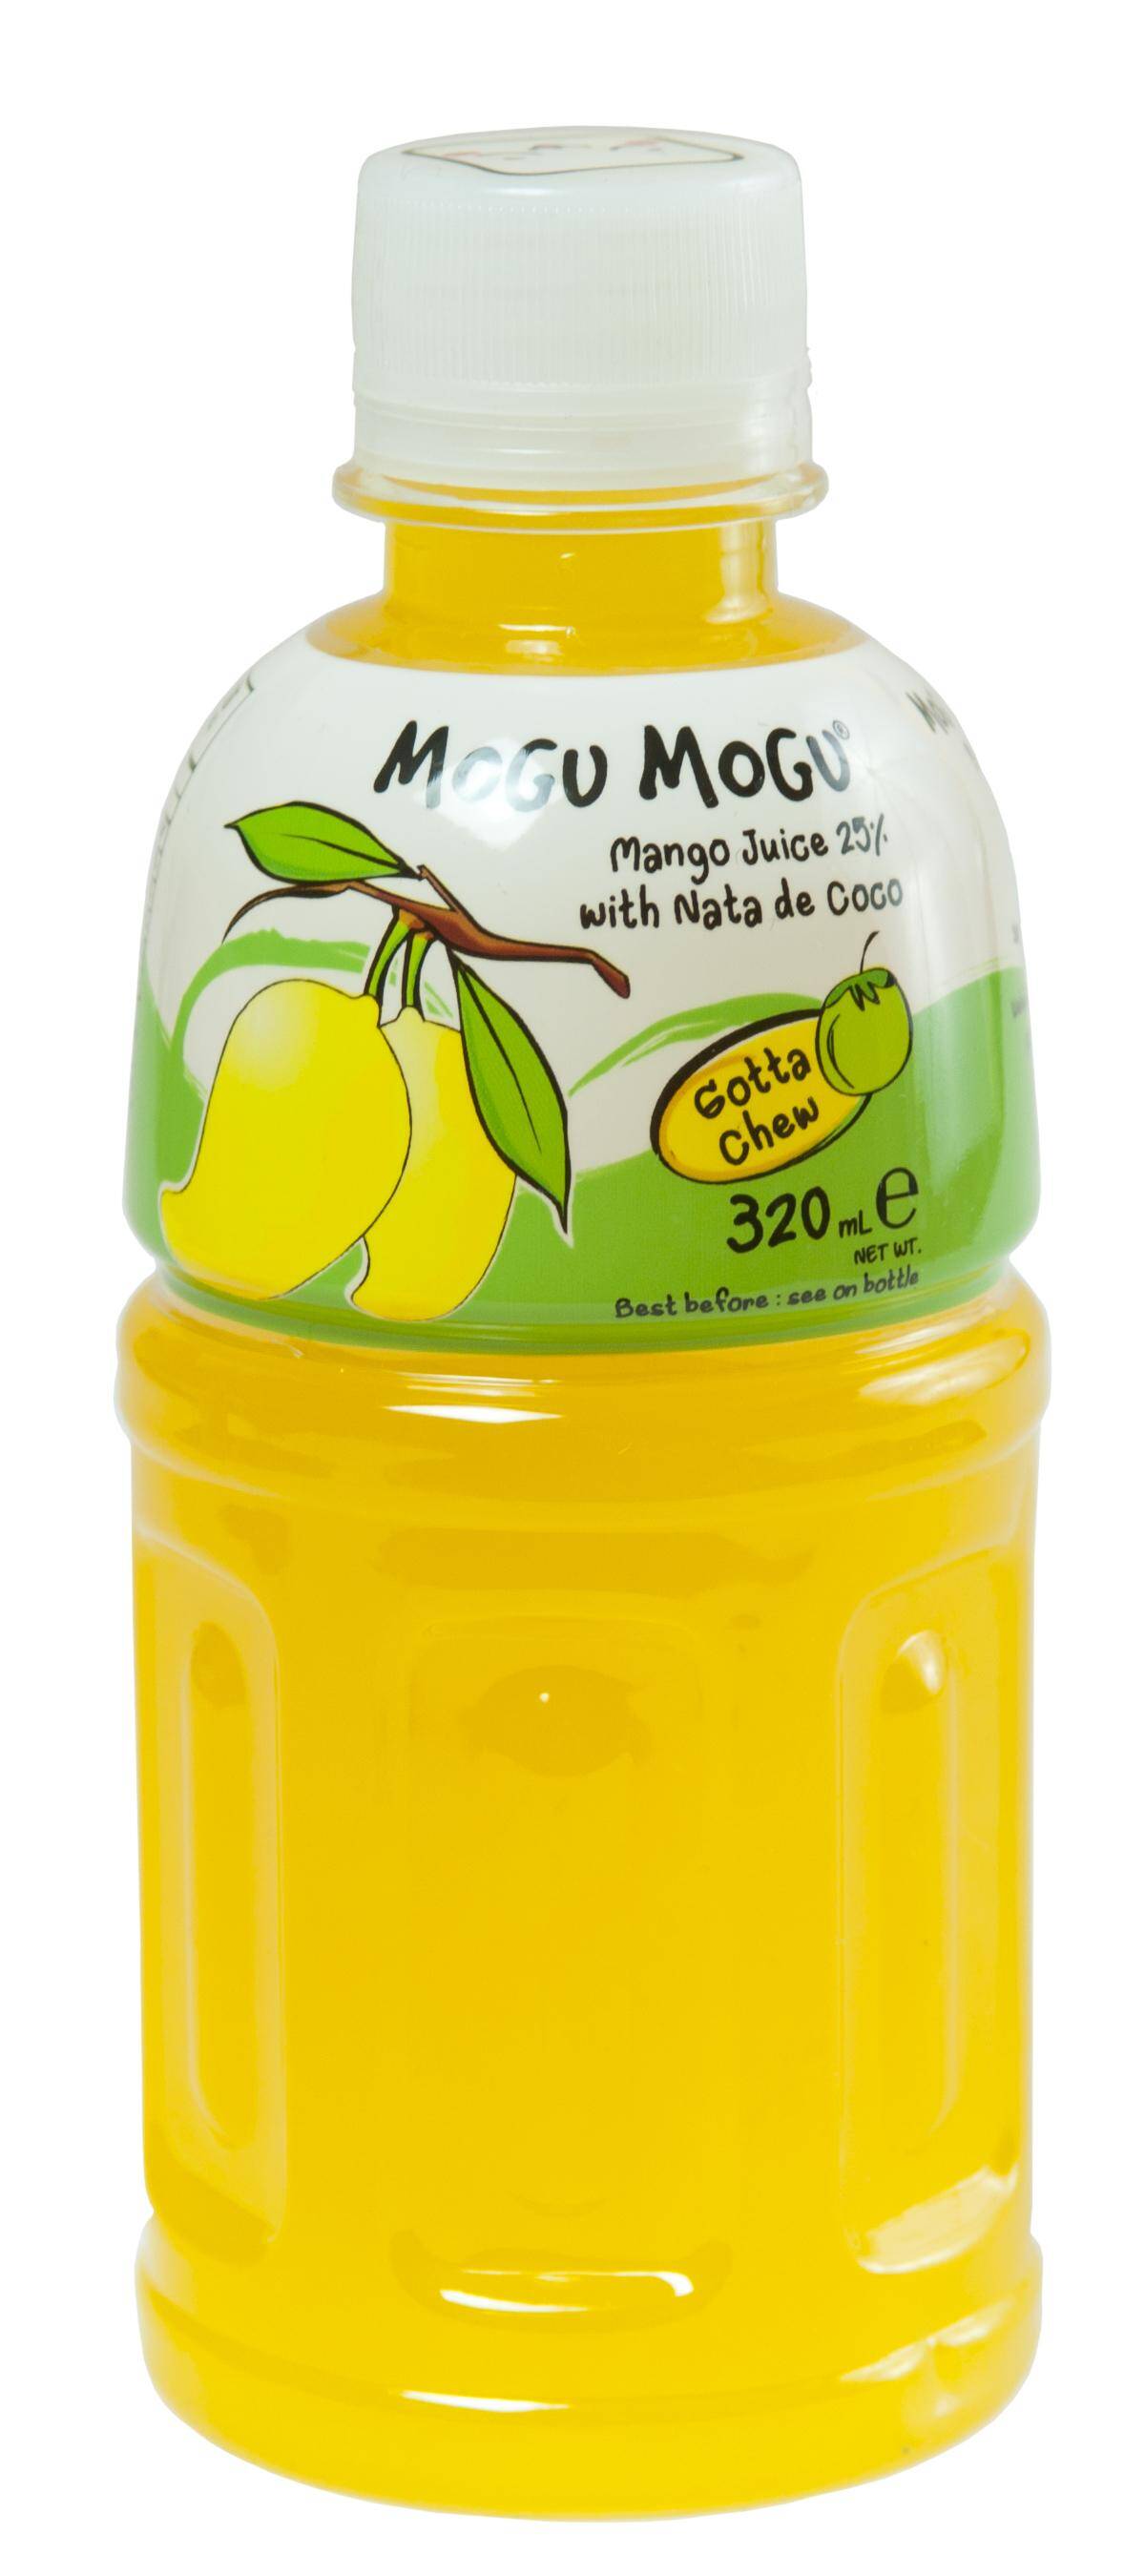 Mogu Mogu Mango nata de coco 320ml/24***